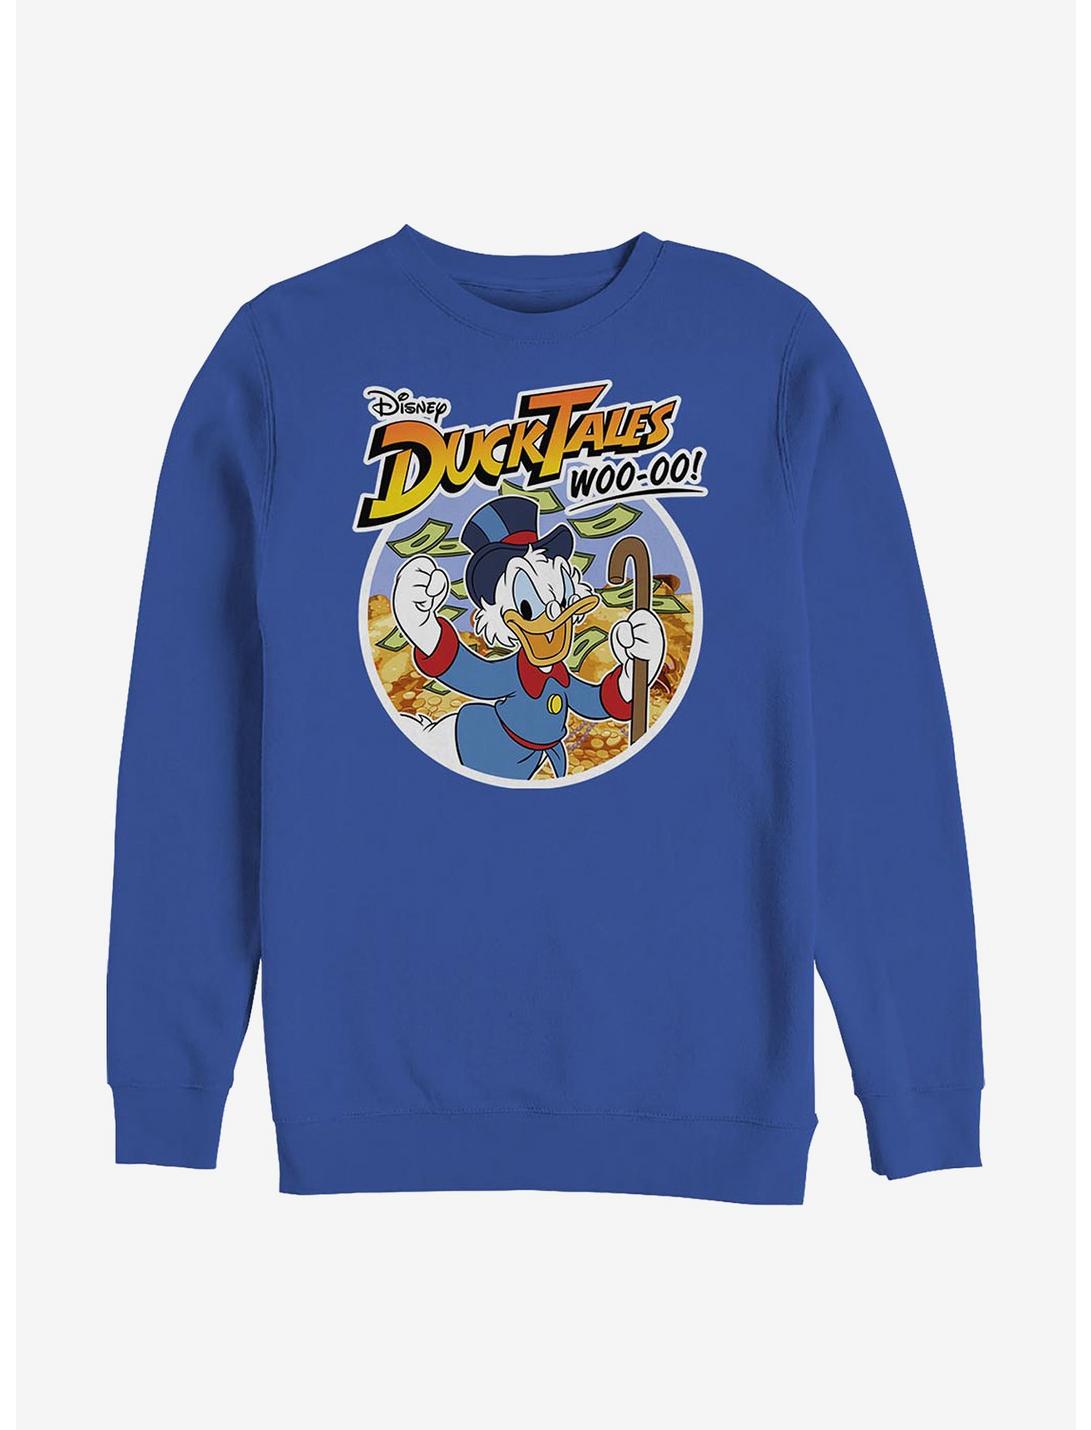 Disney Ducktales Scrooge Woo-oo Crew Sweatshirt, ROYAL, hi-res